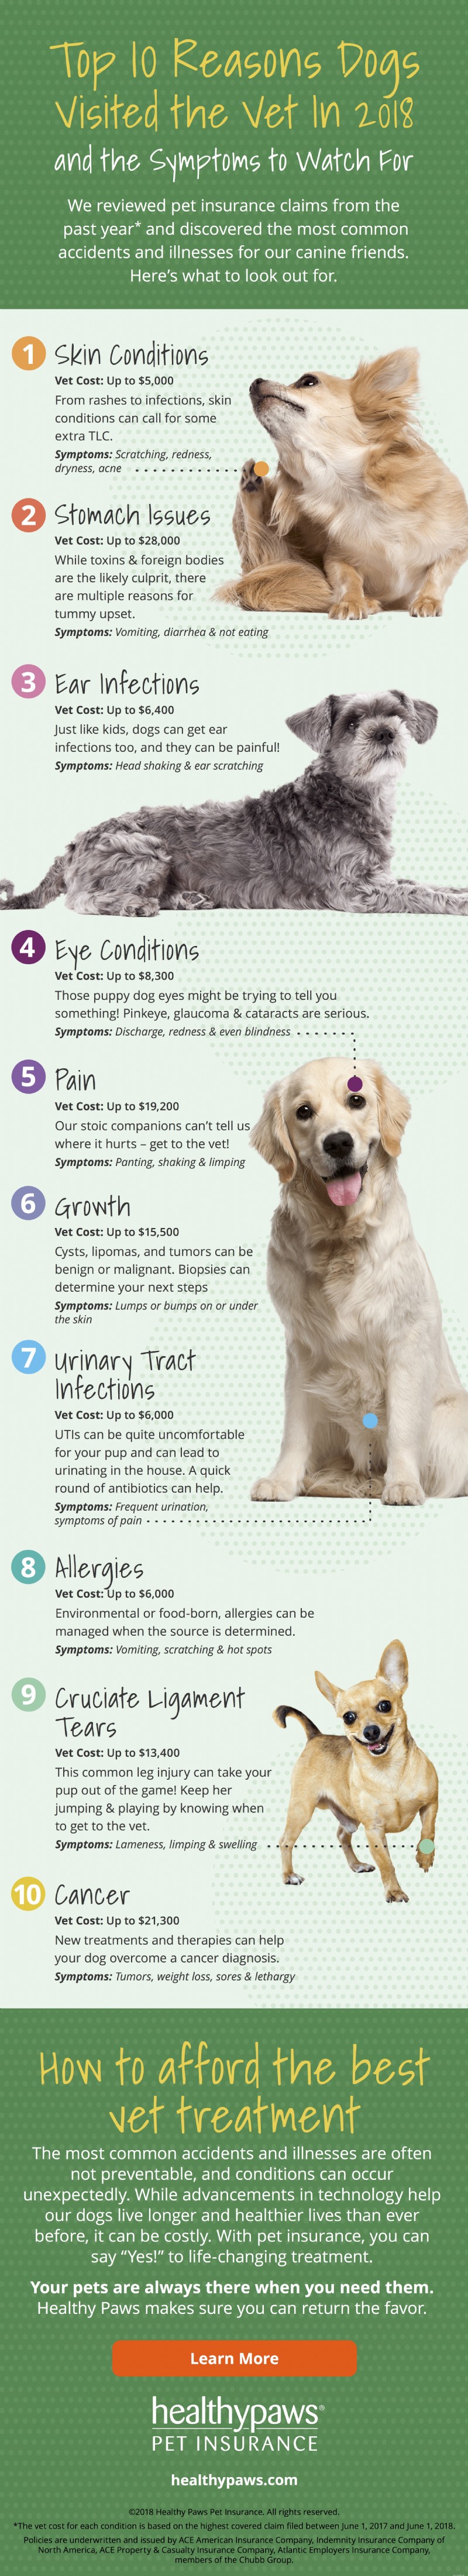 10 основных причин, по которым собаки посещают ветеринара [инфографика]